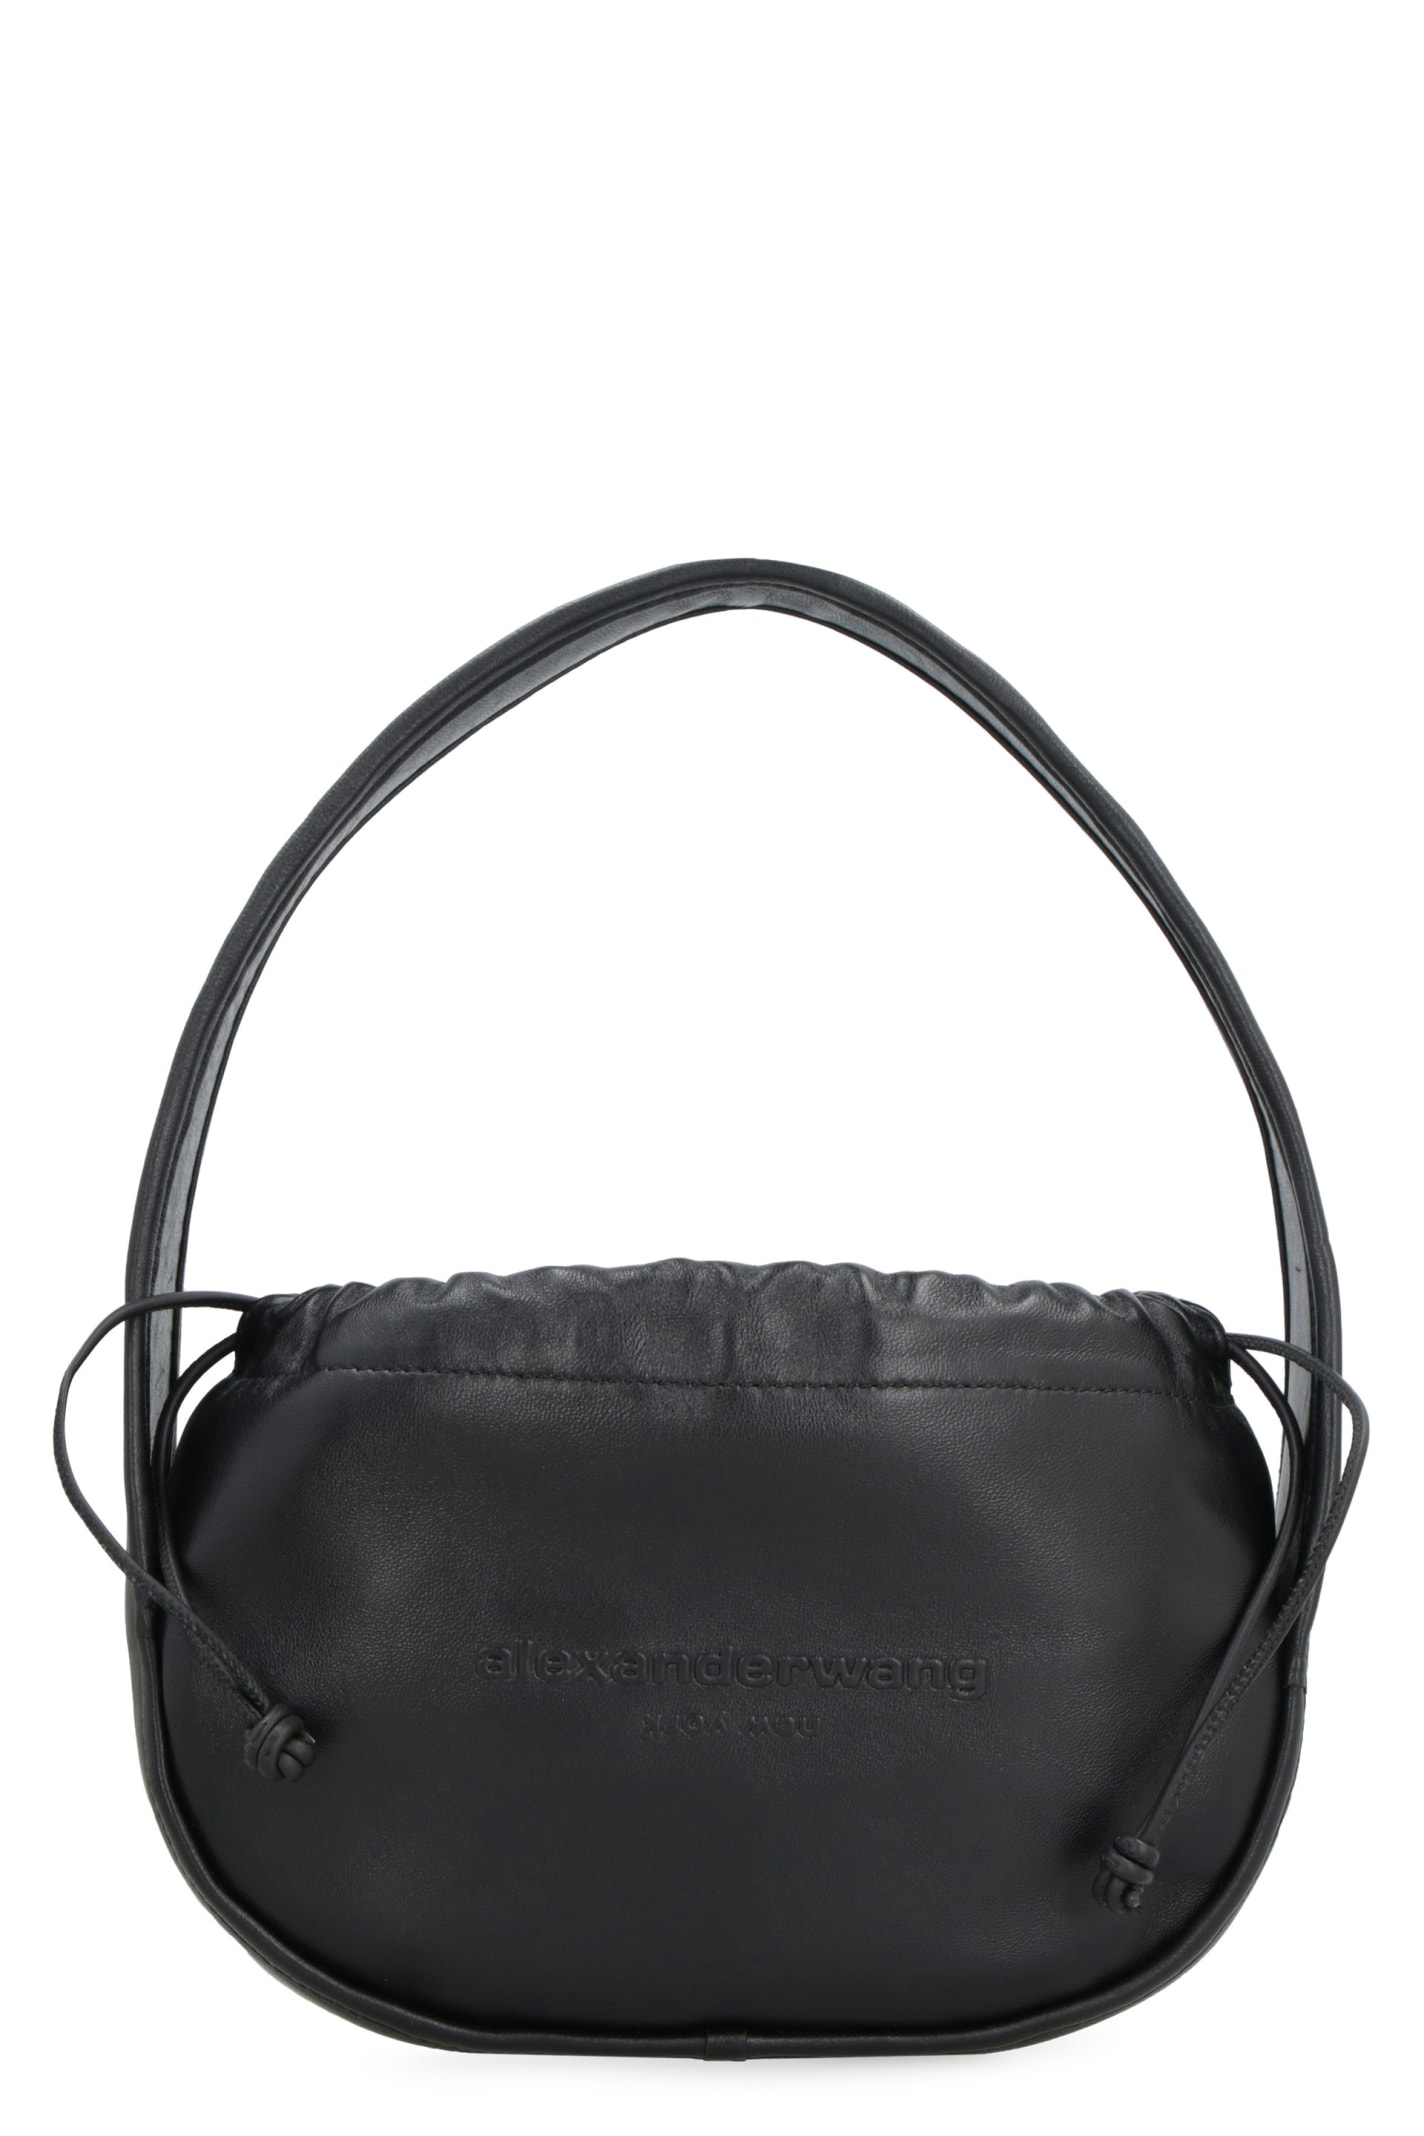 Alexander Wang Cinch Leather Small Hobo Bag